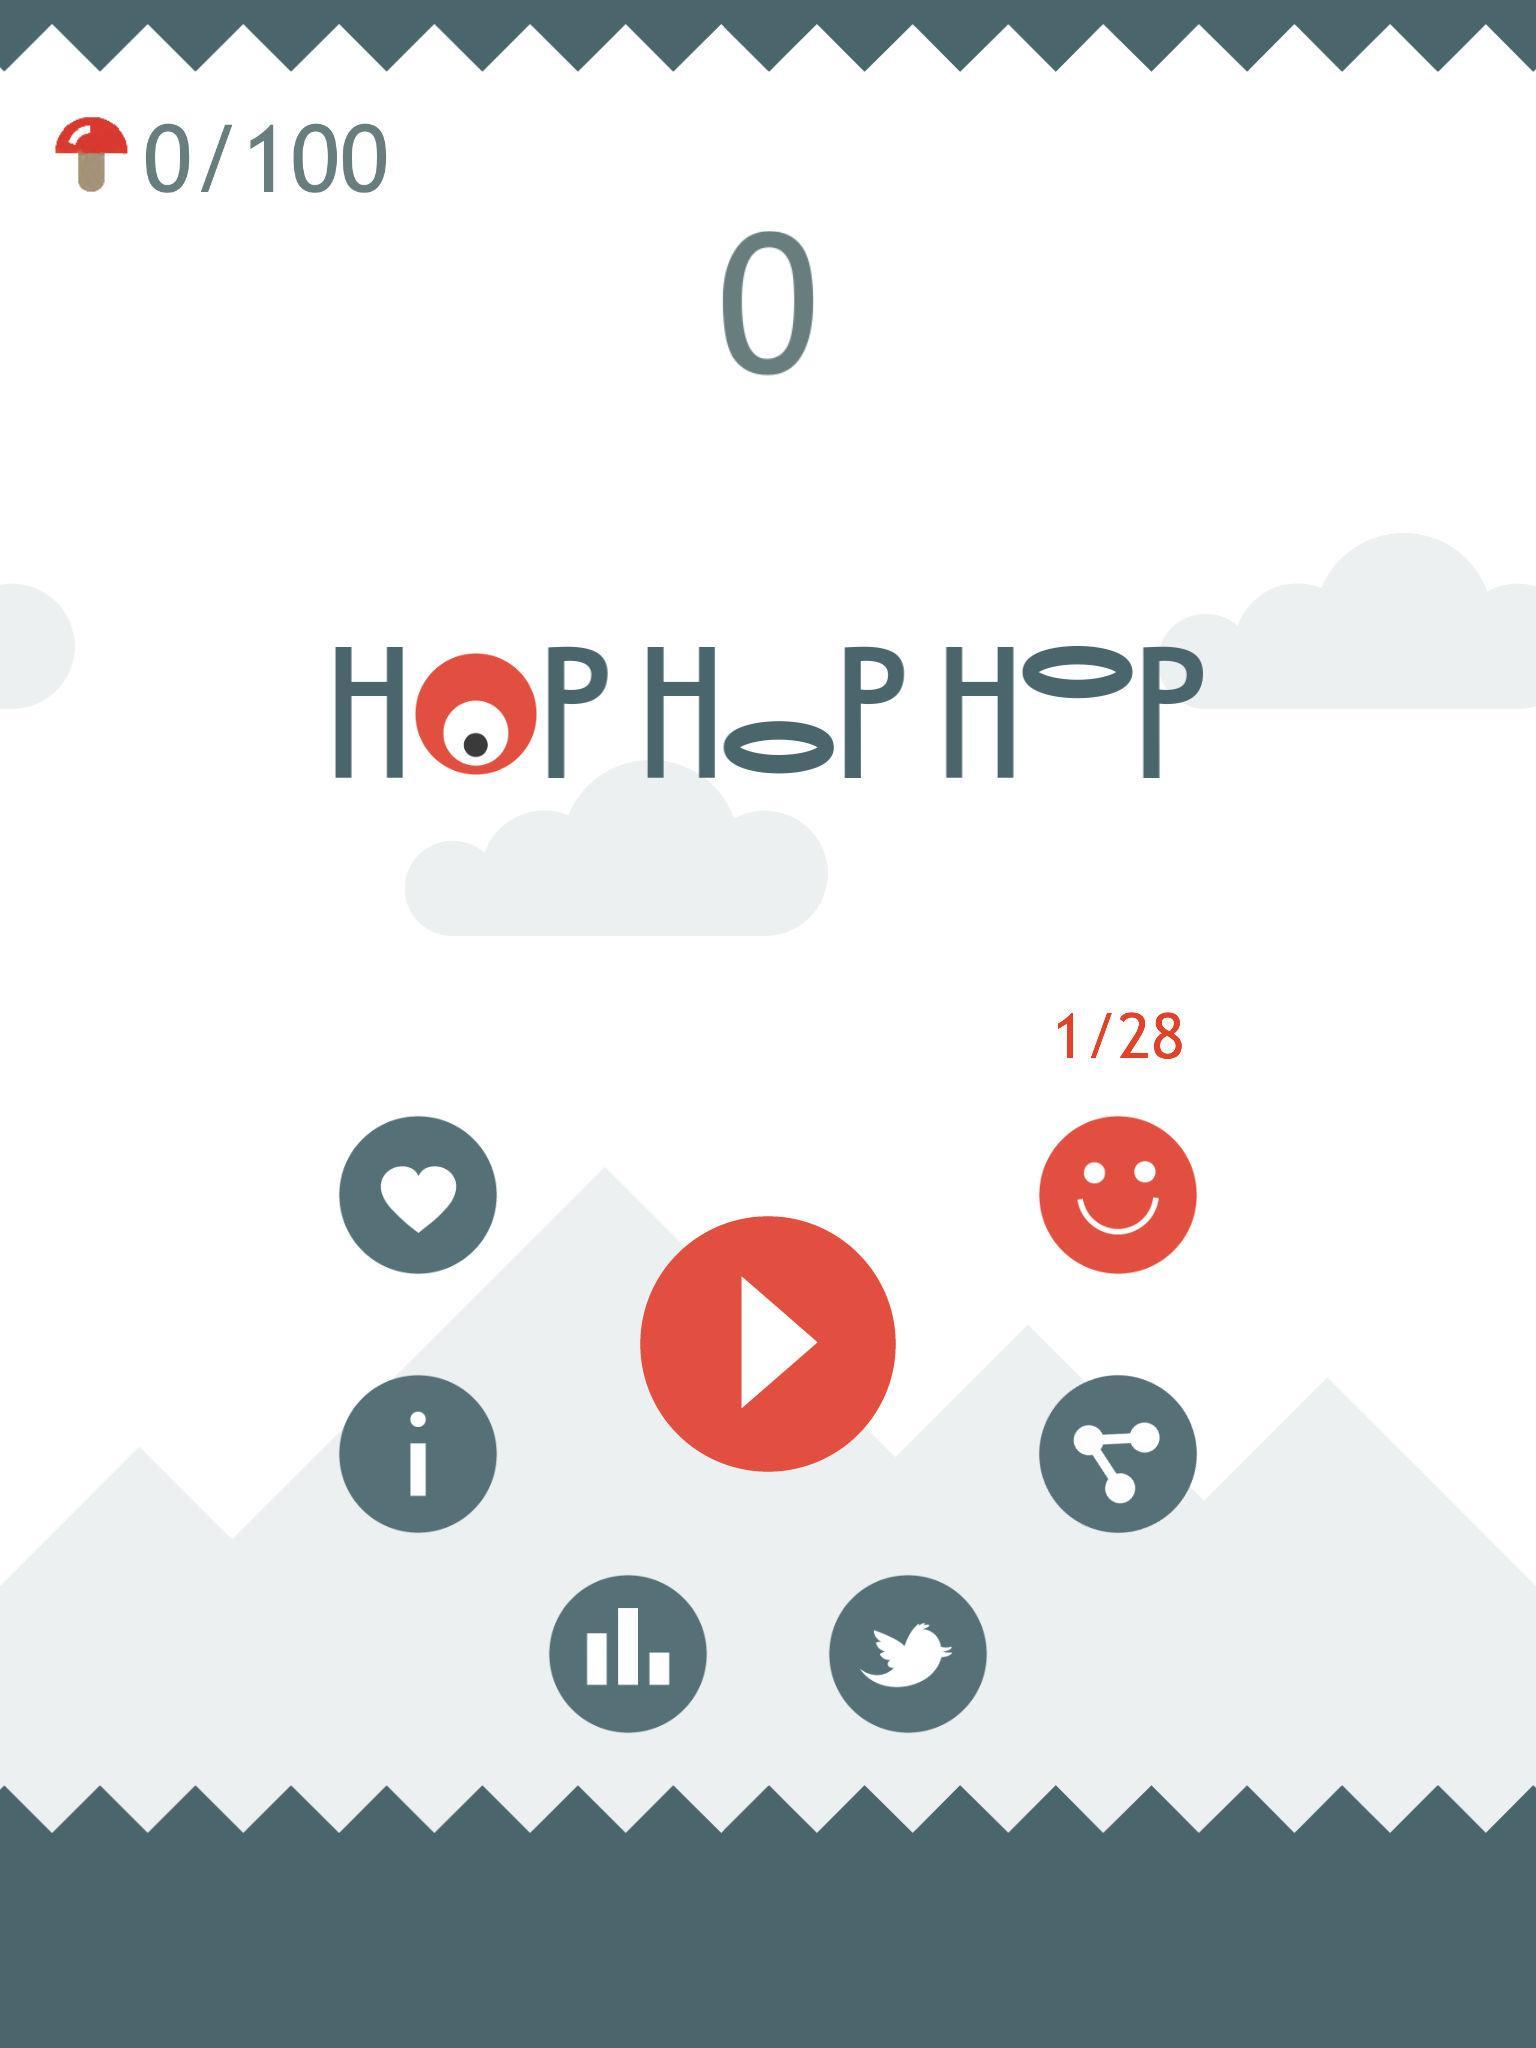 Hop Hop Hop 1.4 Screenshot 7